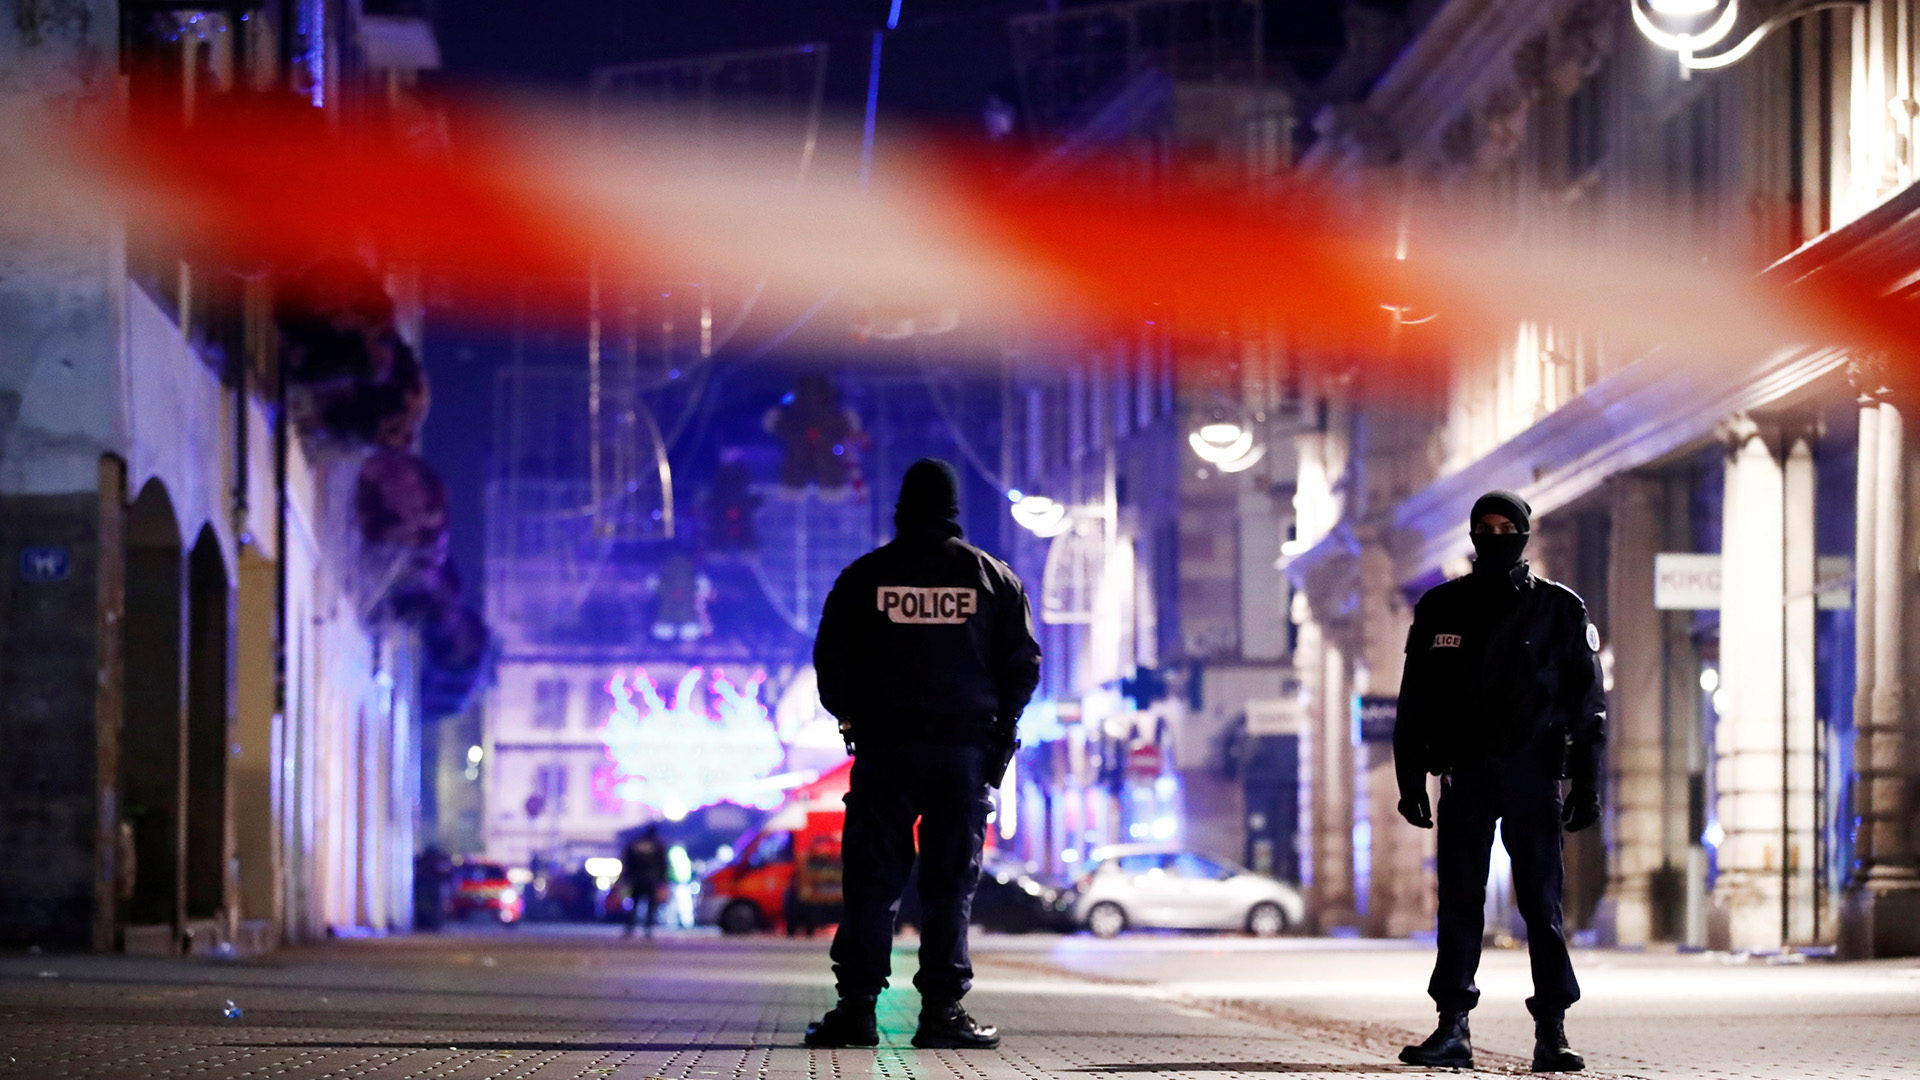 El mercado de Navidad de Estrasburgo, donde se perpetró el atentado (Reuters)